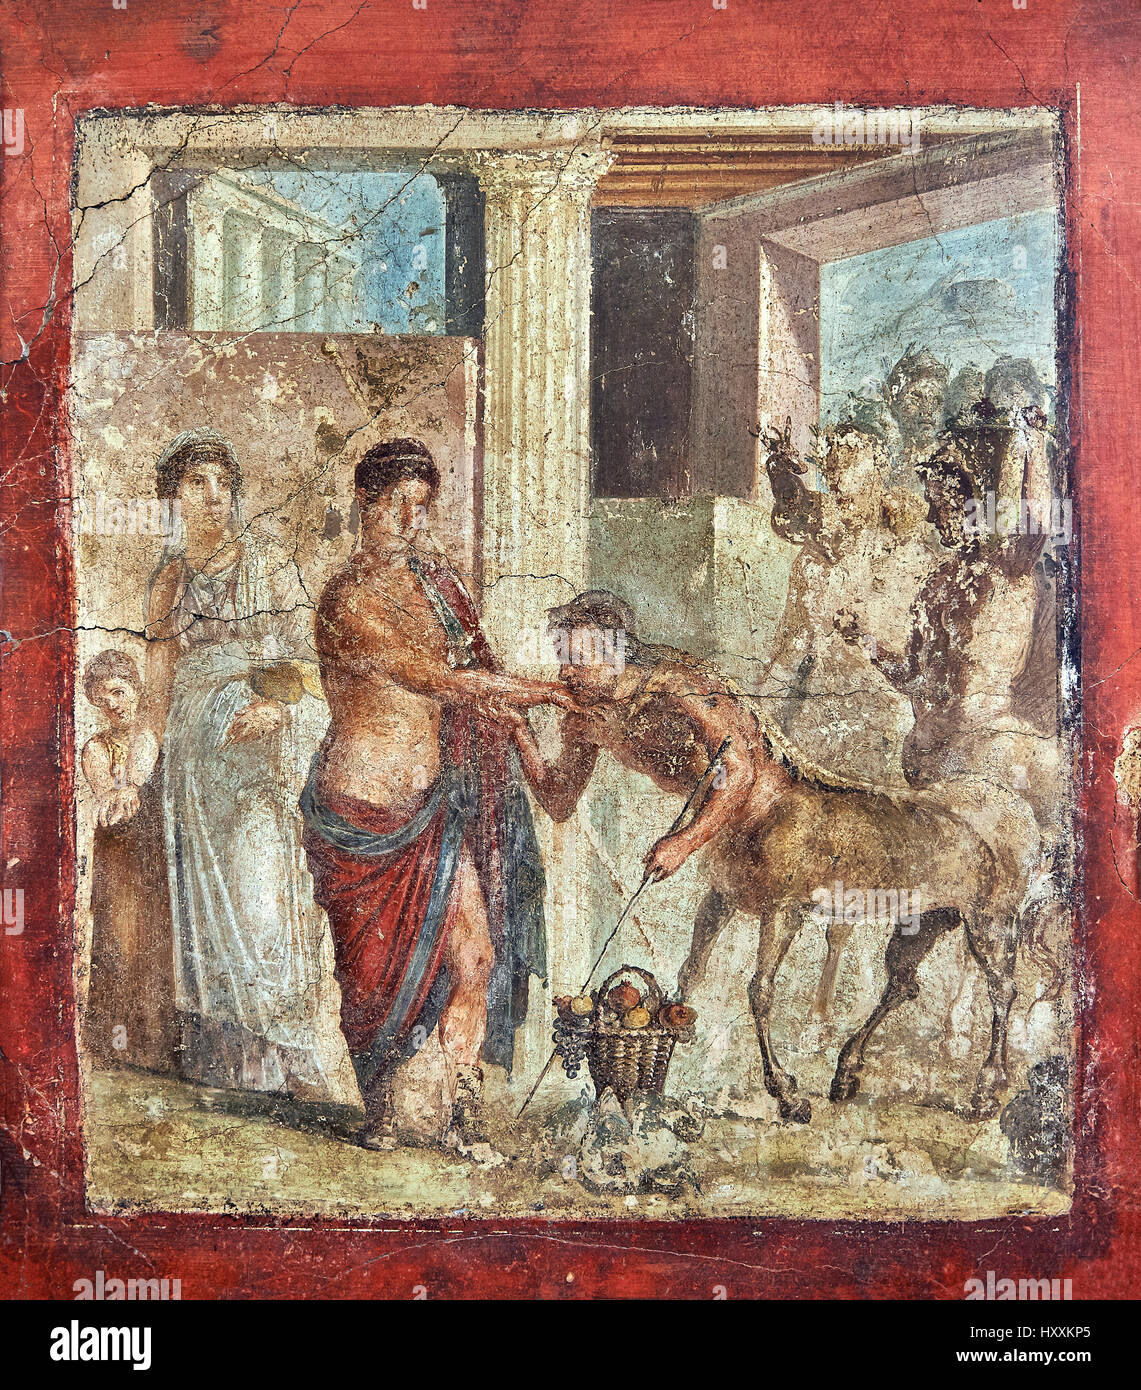 Peinture murale fresque romaine de Pirithous avec Hippodamia à un mariage où la femme Lapith centaures kidnappé, Pompéi , inv 9044, Musée de Naples Banque D'Images